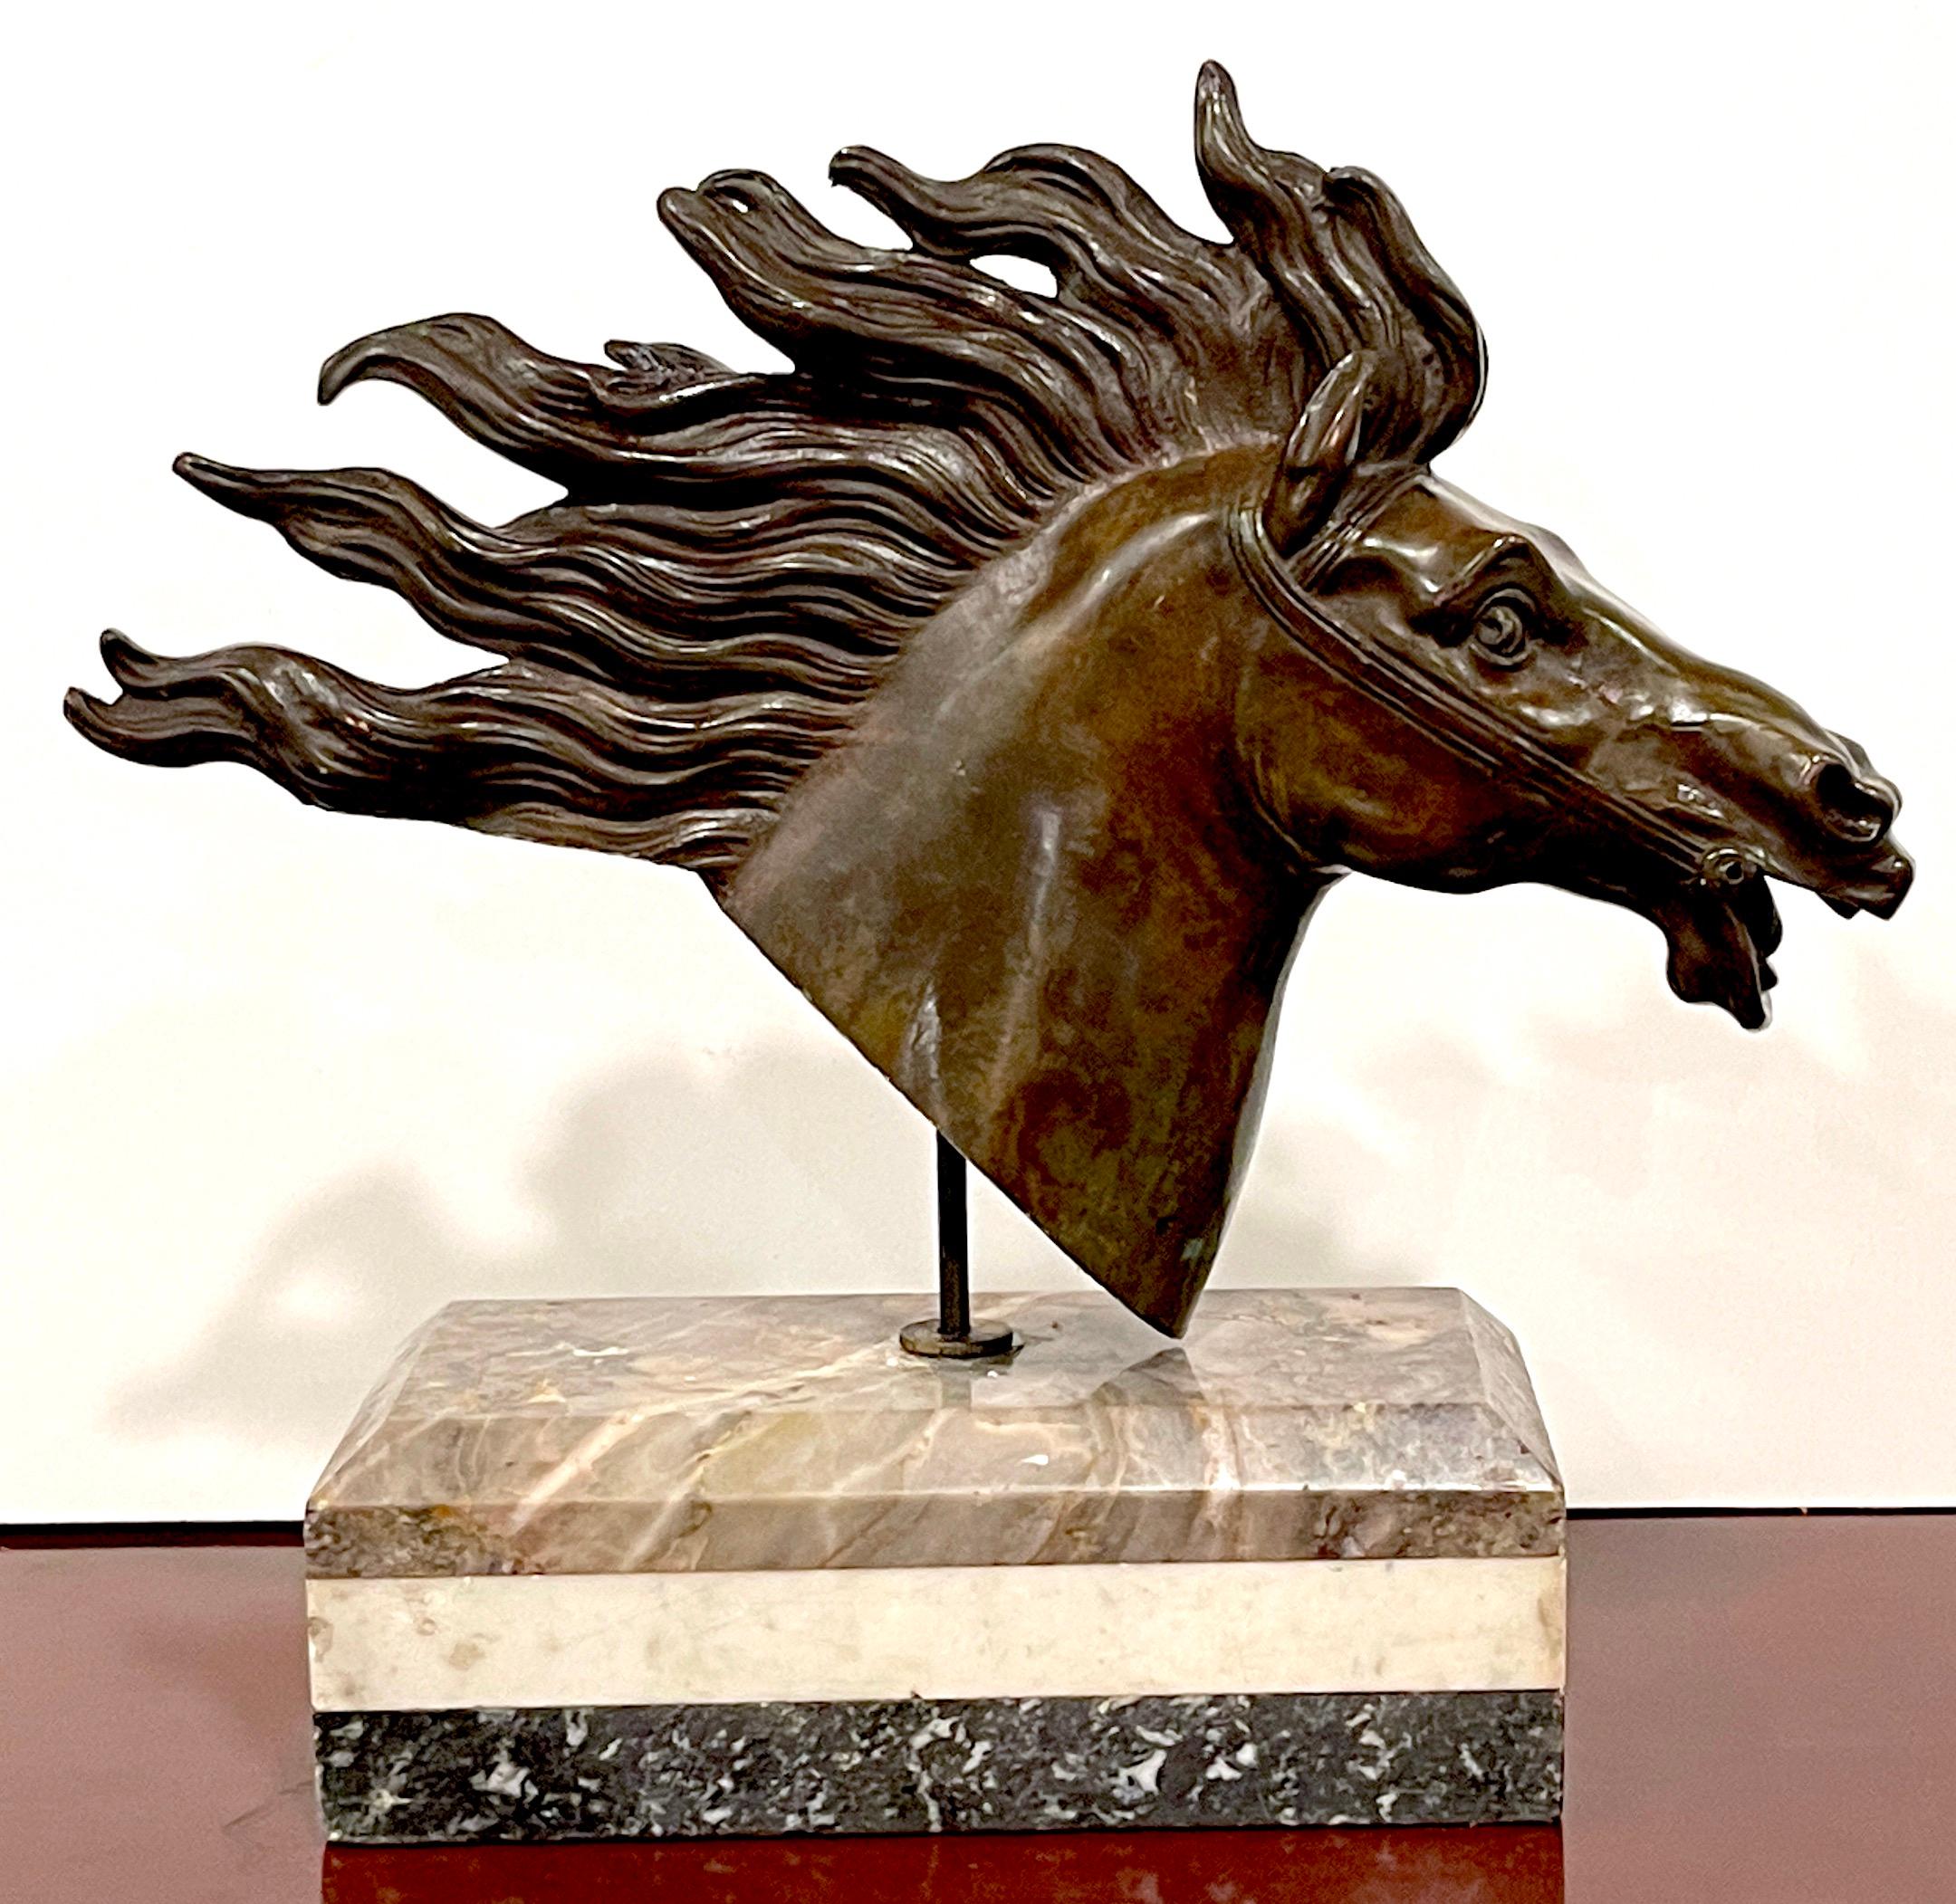 A.C.I.C. Grand Tour Roman Bronze Buste de cheval, spécimen Base en marbre
Italie, Fin du XVIIIe siècle 
 Buste de cheval en bronze romain du XVIIIe siècle, présenté sur une captivante base en marbre. 

La qualité de l'exécution de ce moulage est